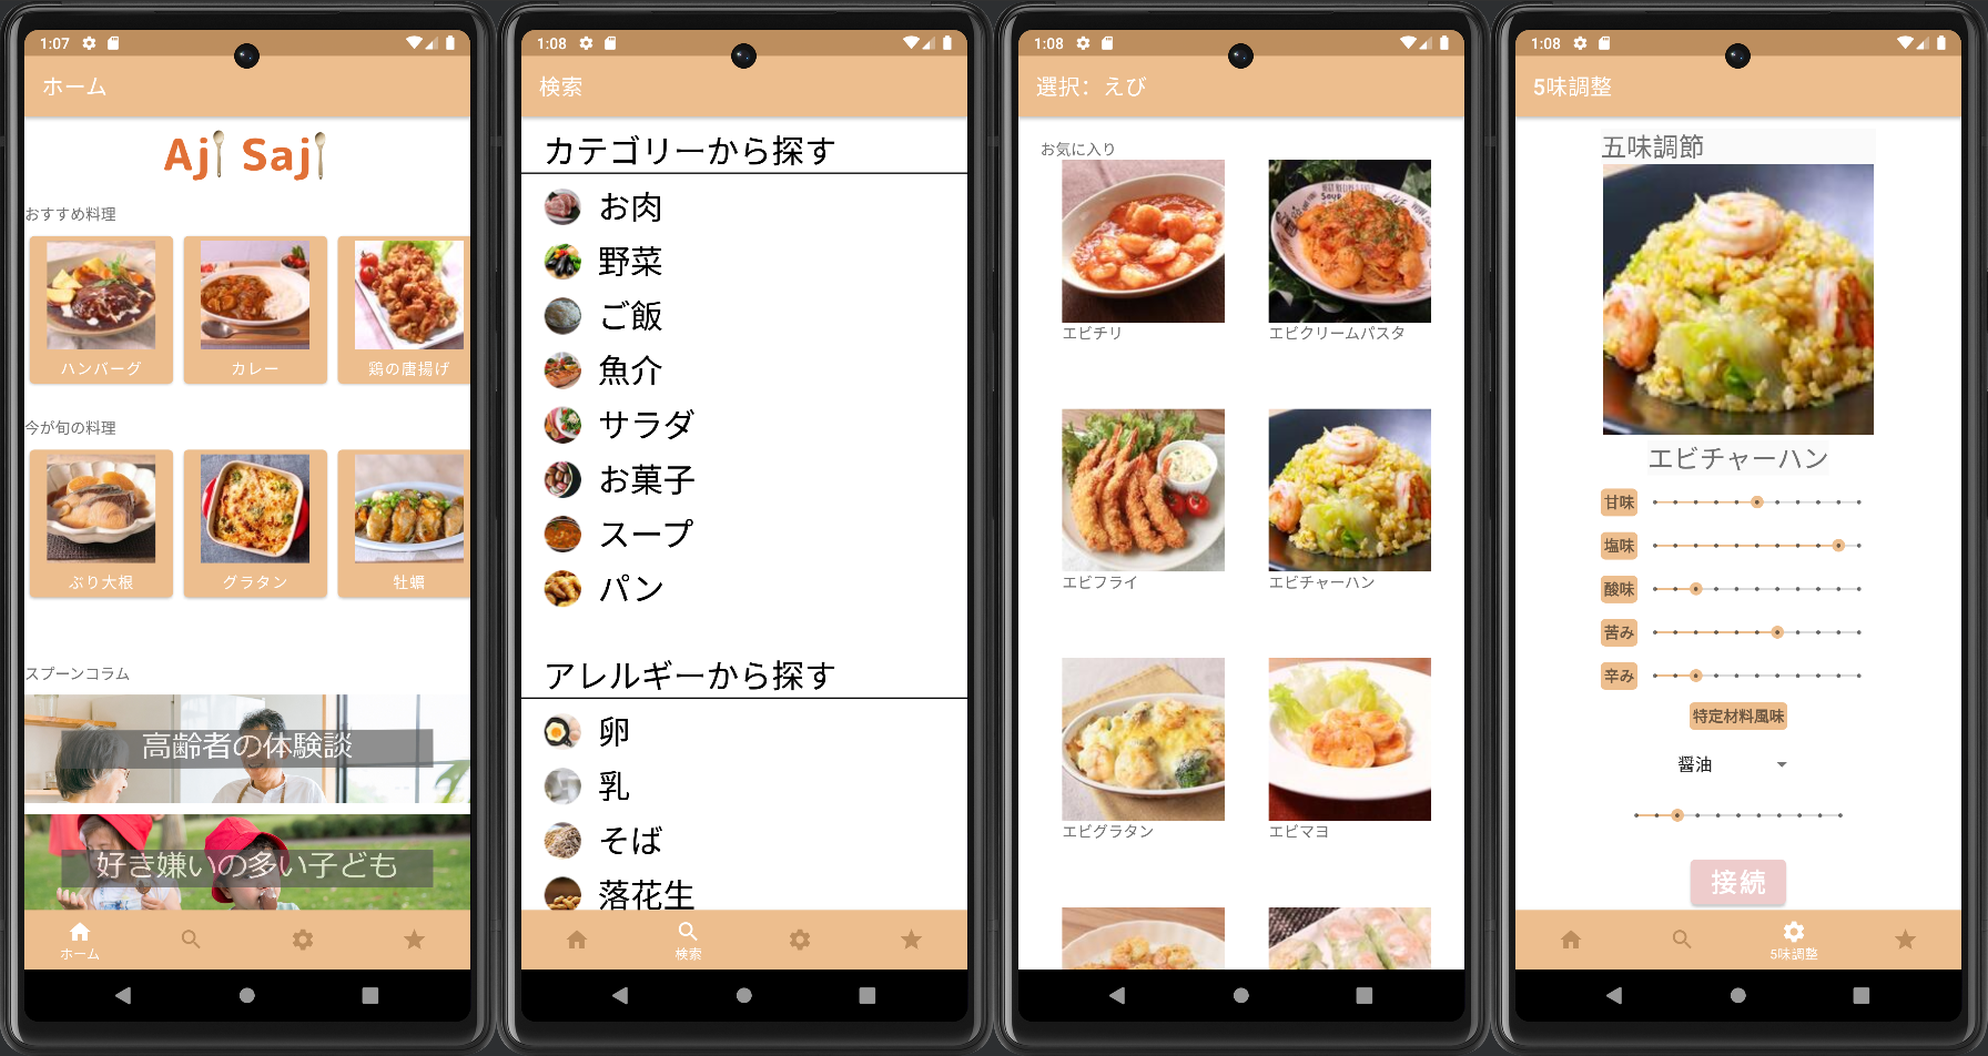 Aji Sajiアプリ画面